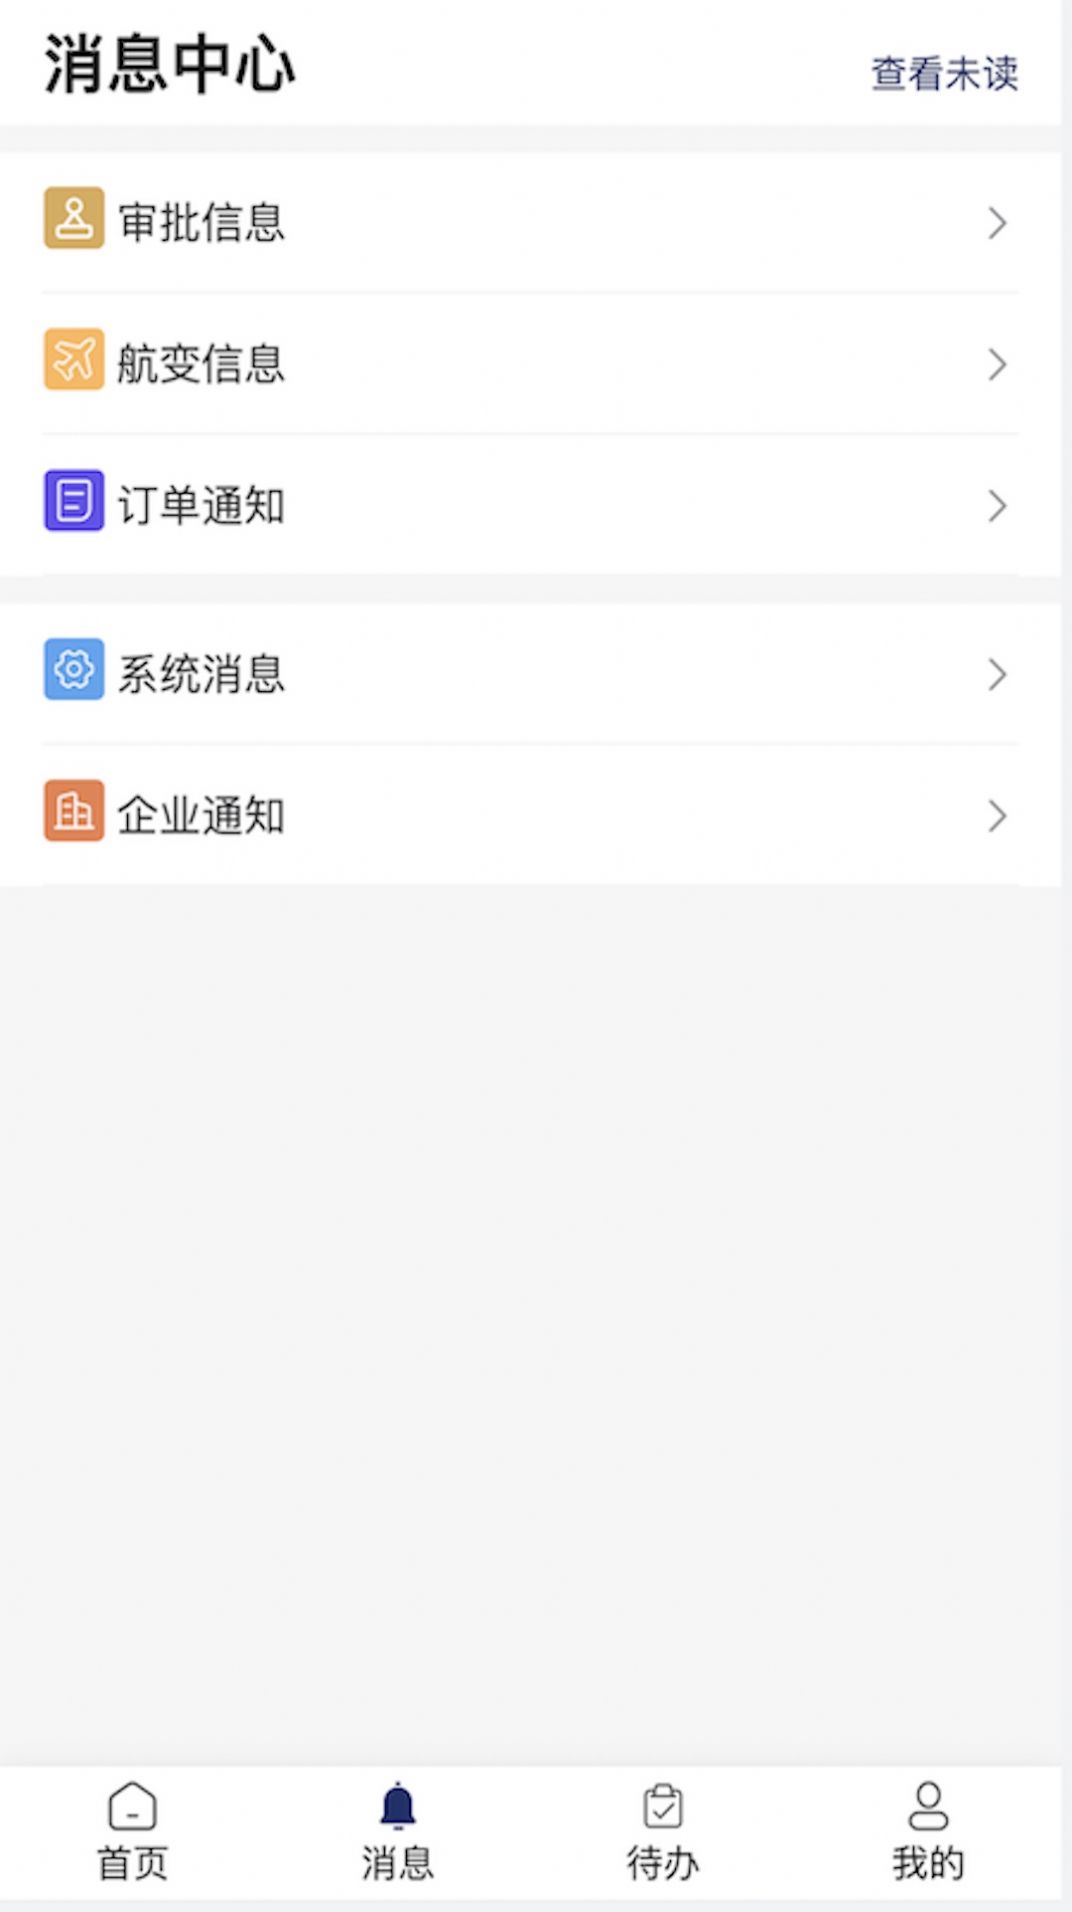 甄旅商旅app图1